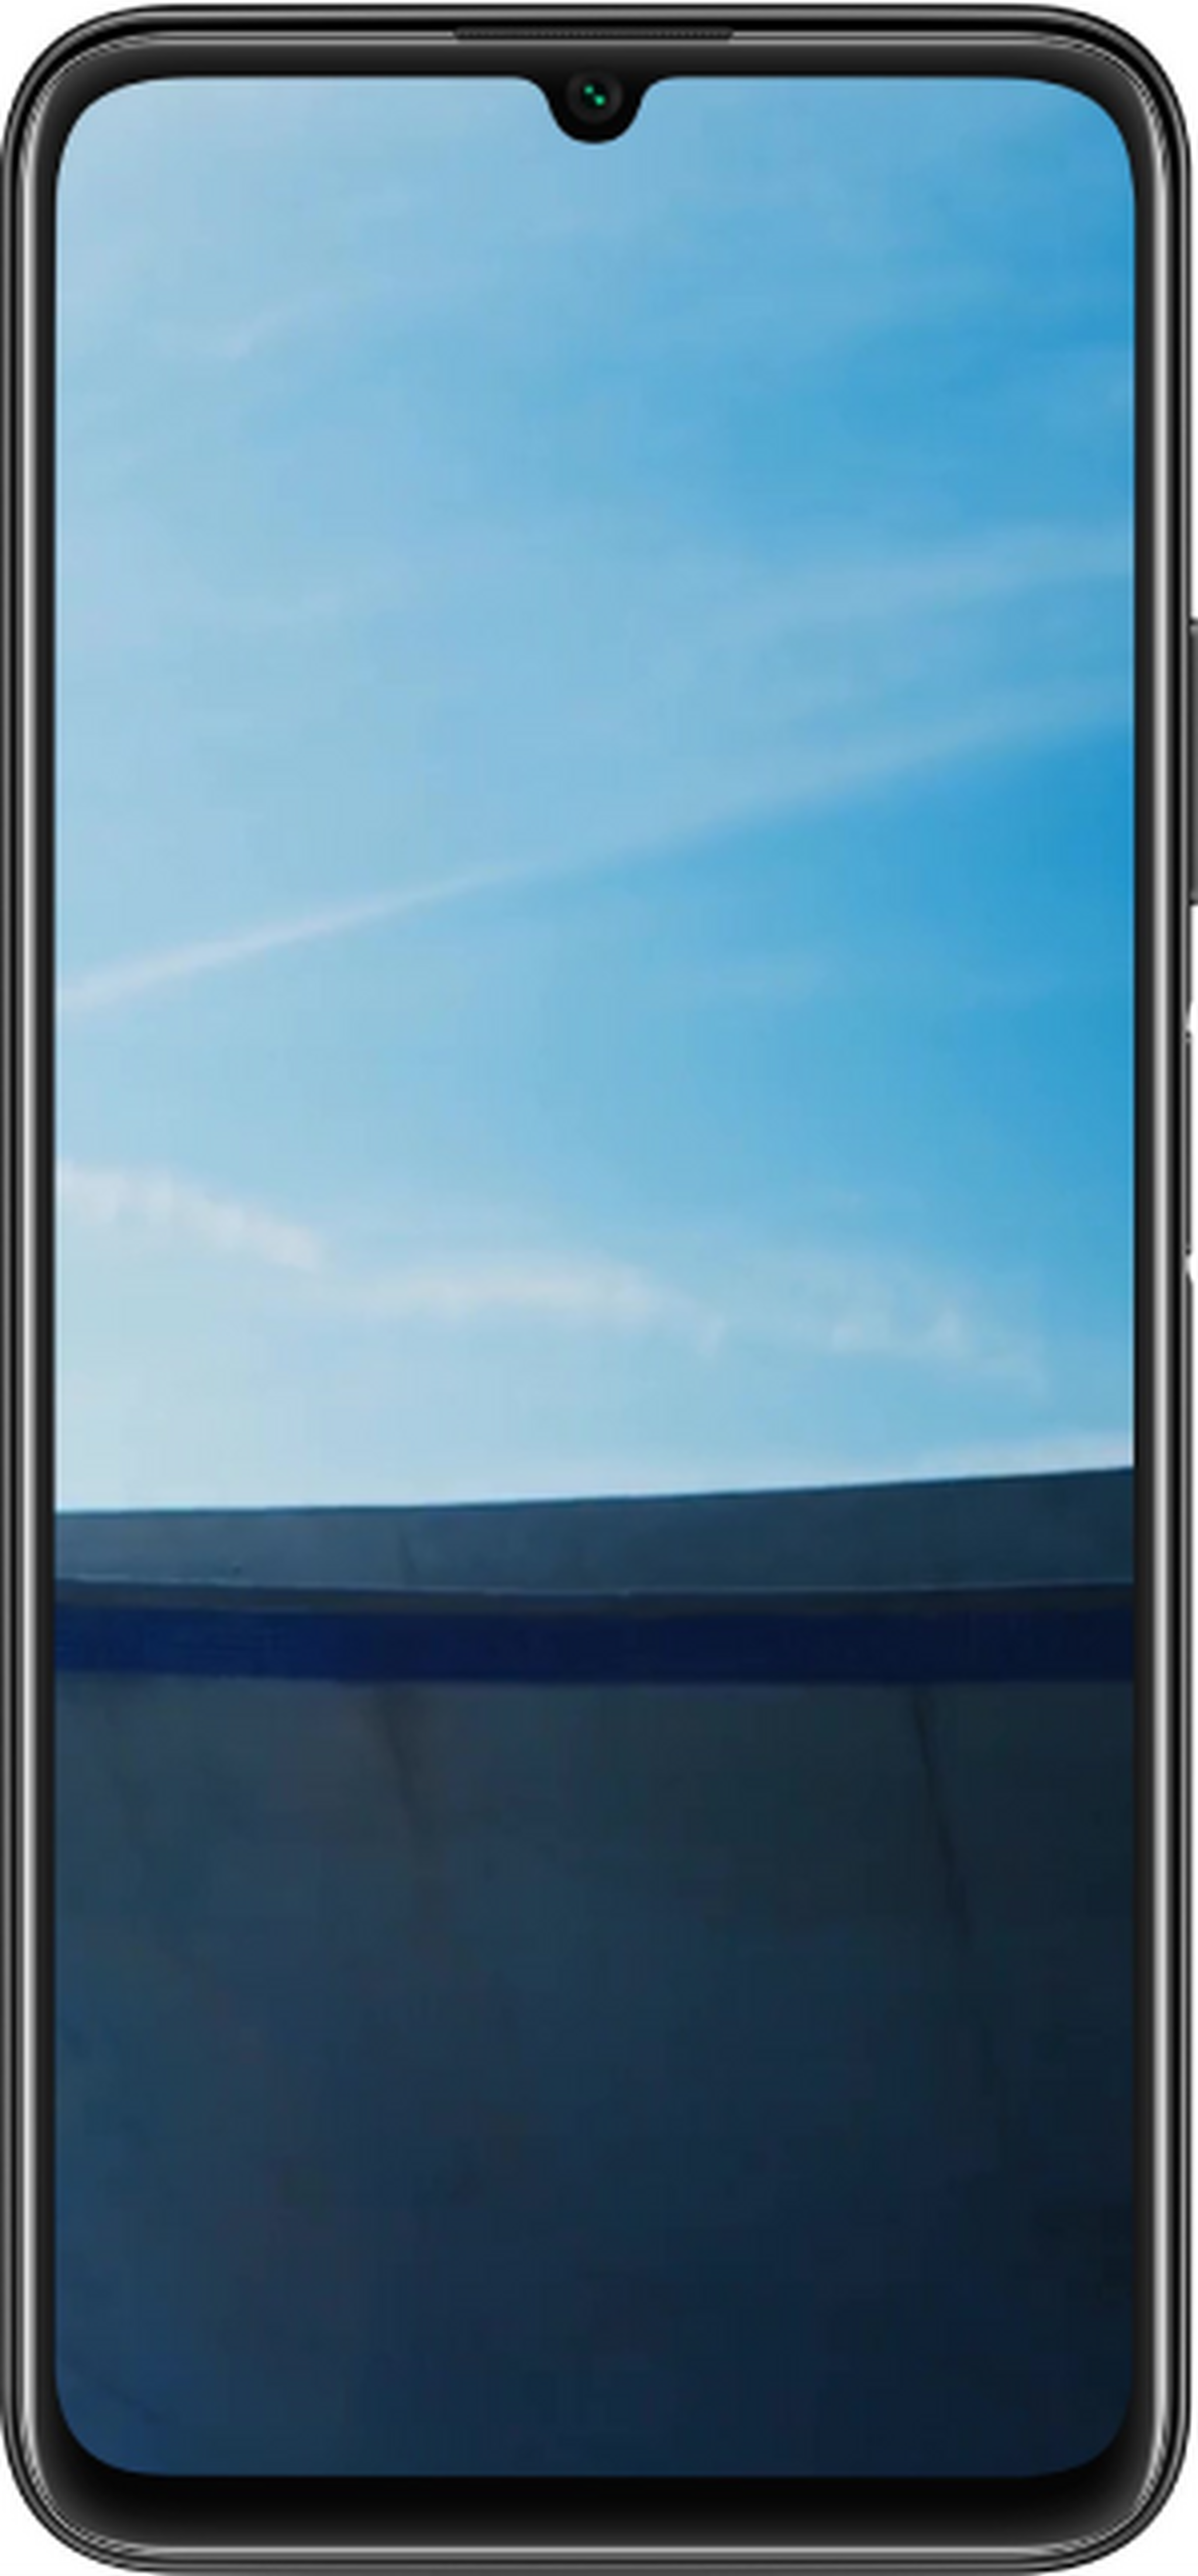 Huawei Nova Y60 64GB Phone - Black